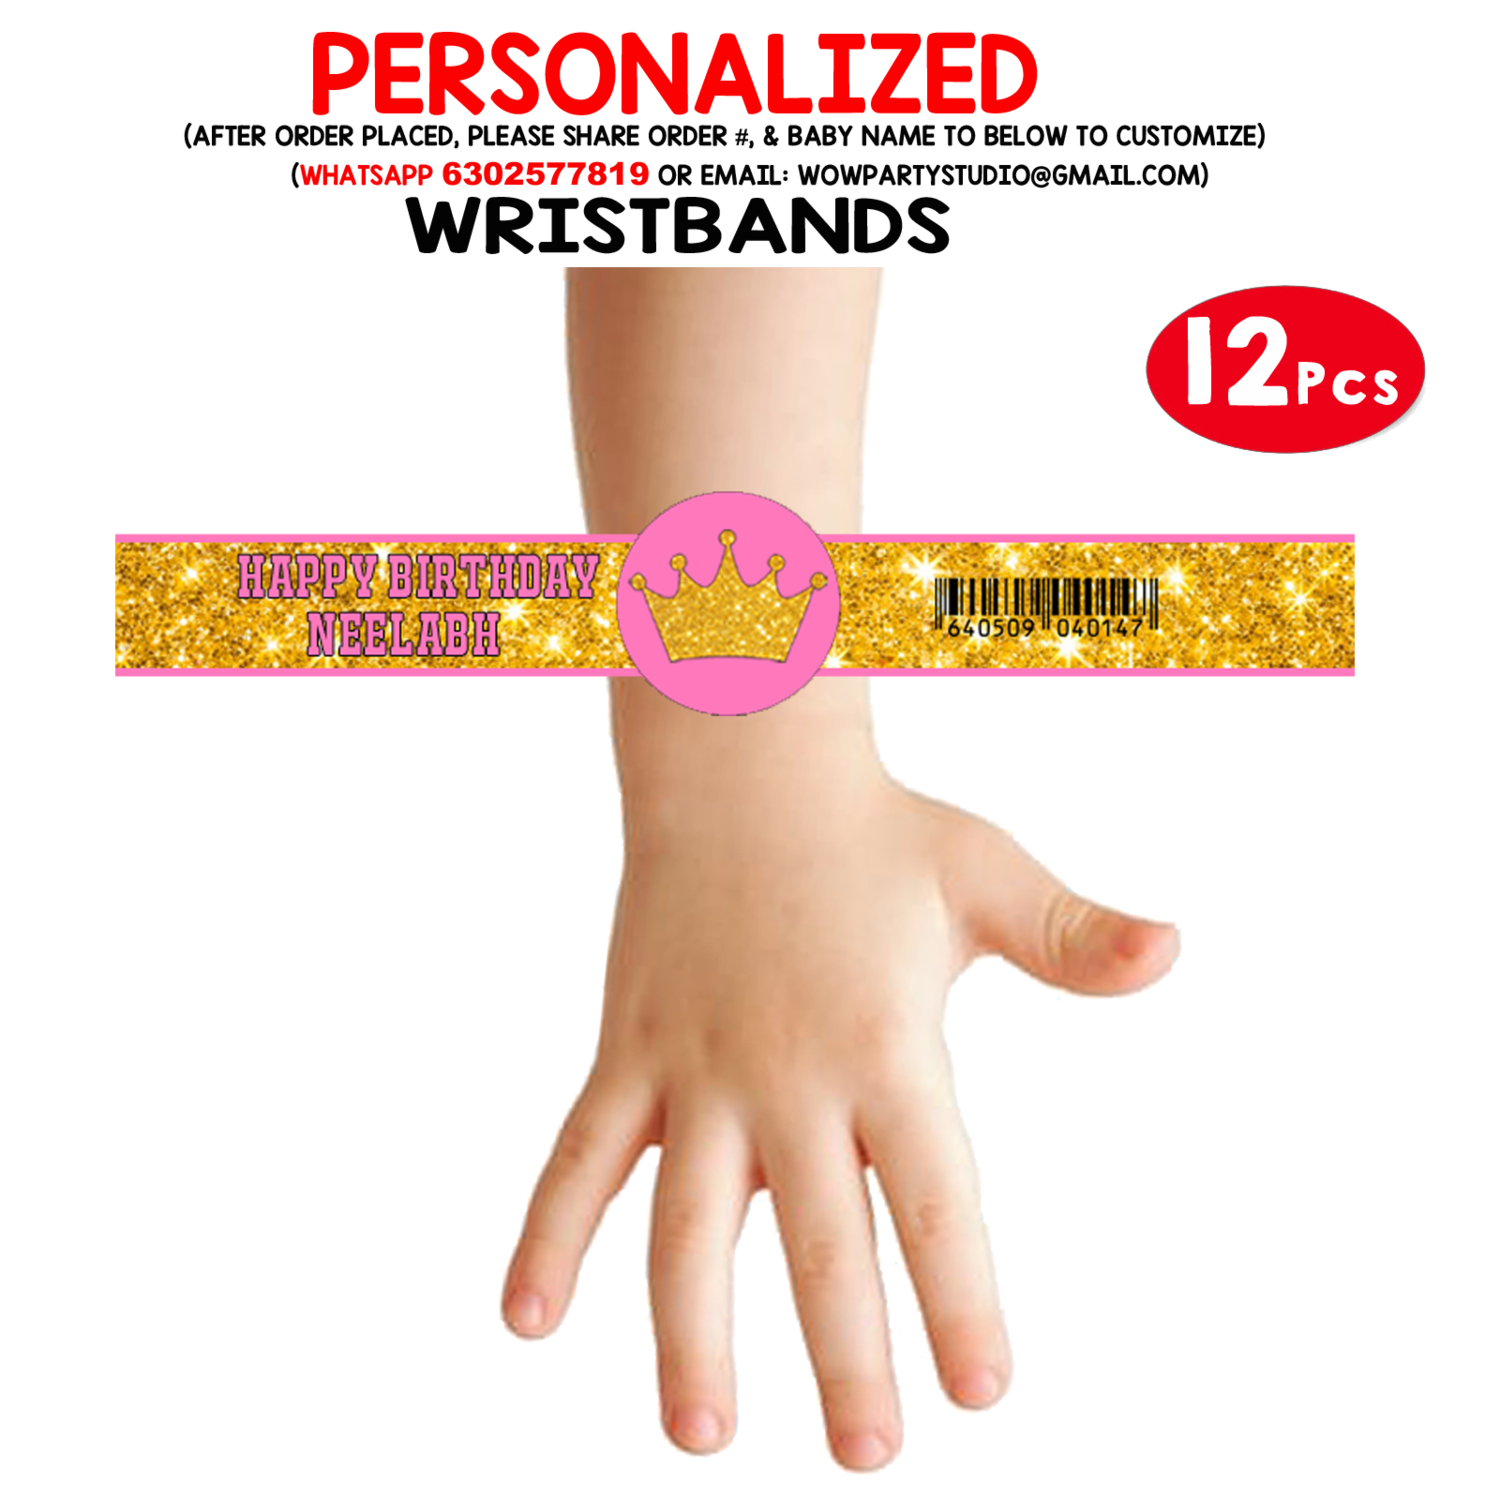 Royal Princess - Pink Wristbands (12 Pcs)